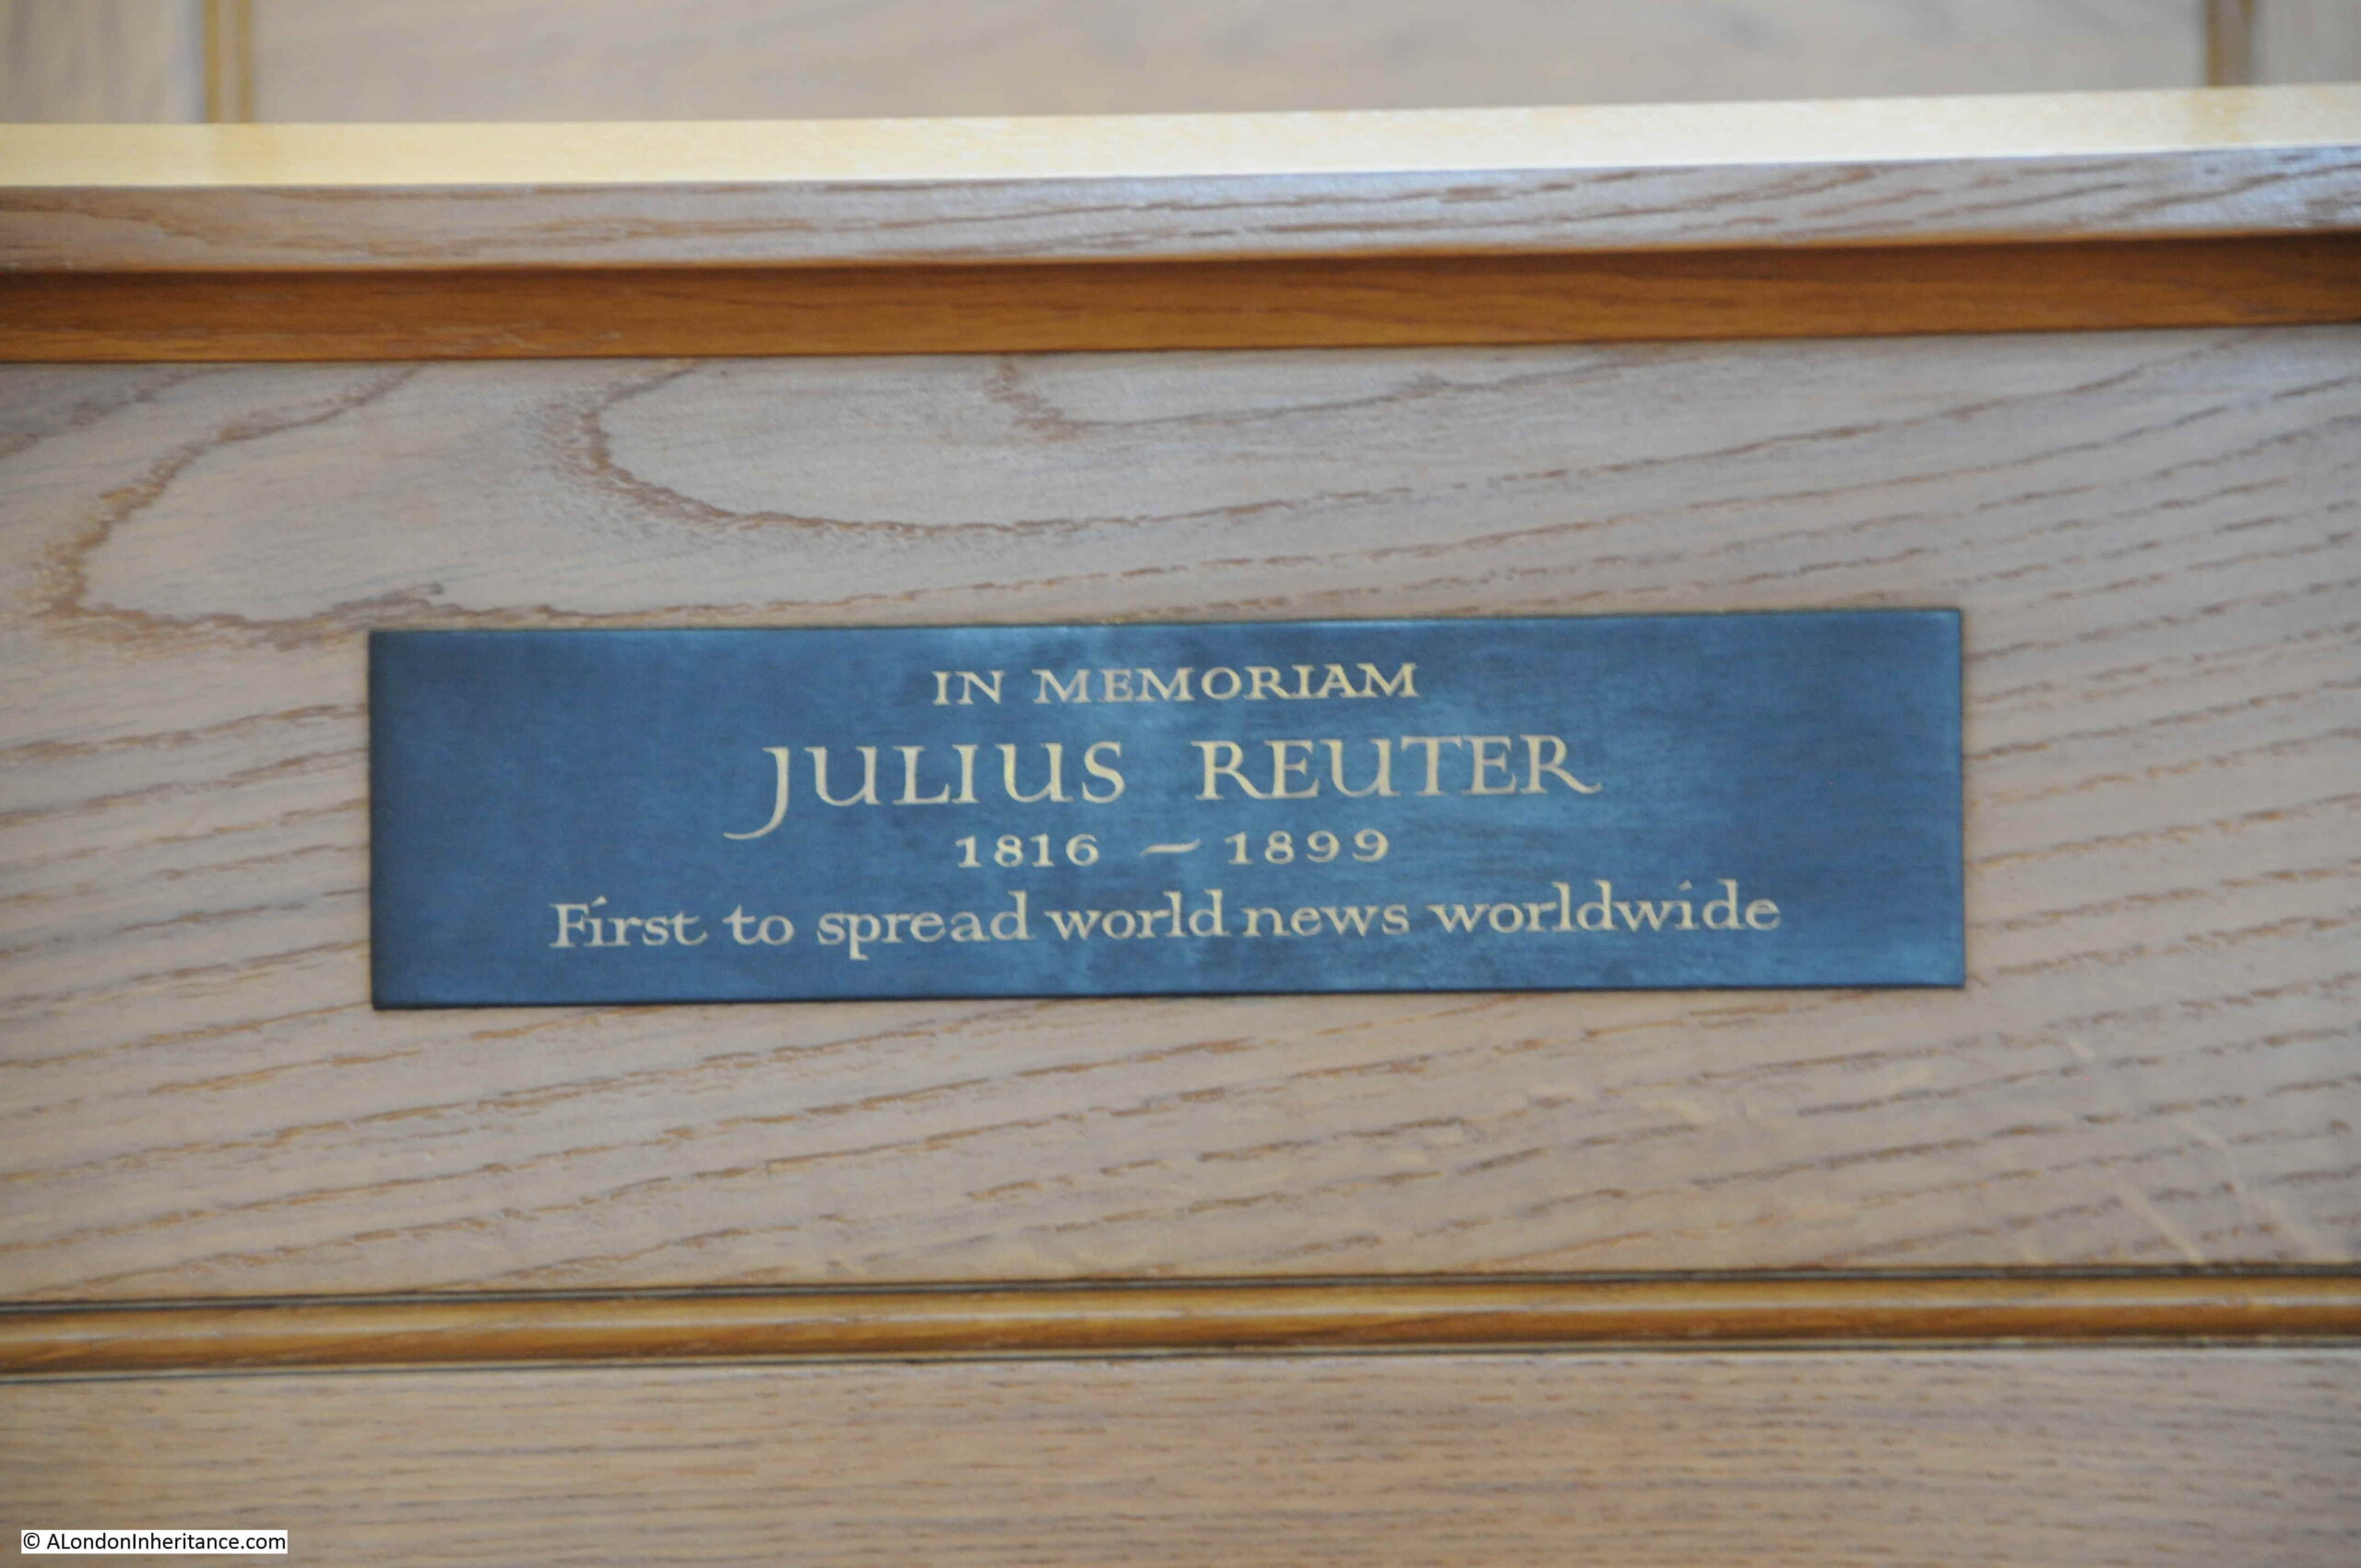 Julius Reuter